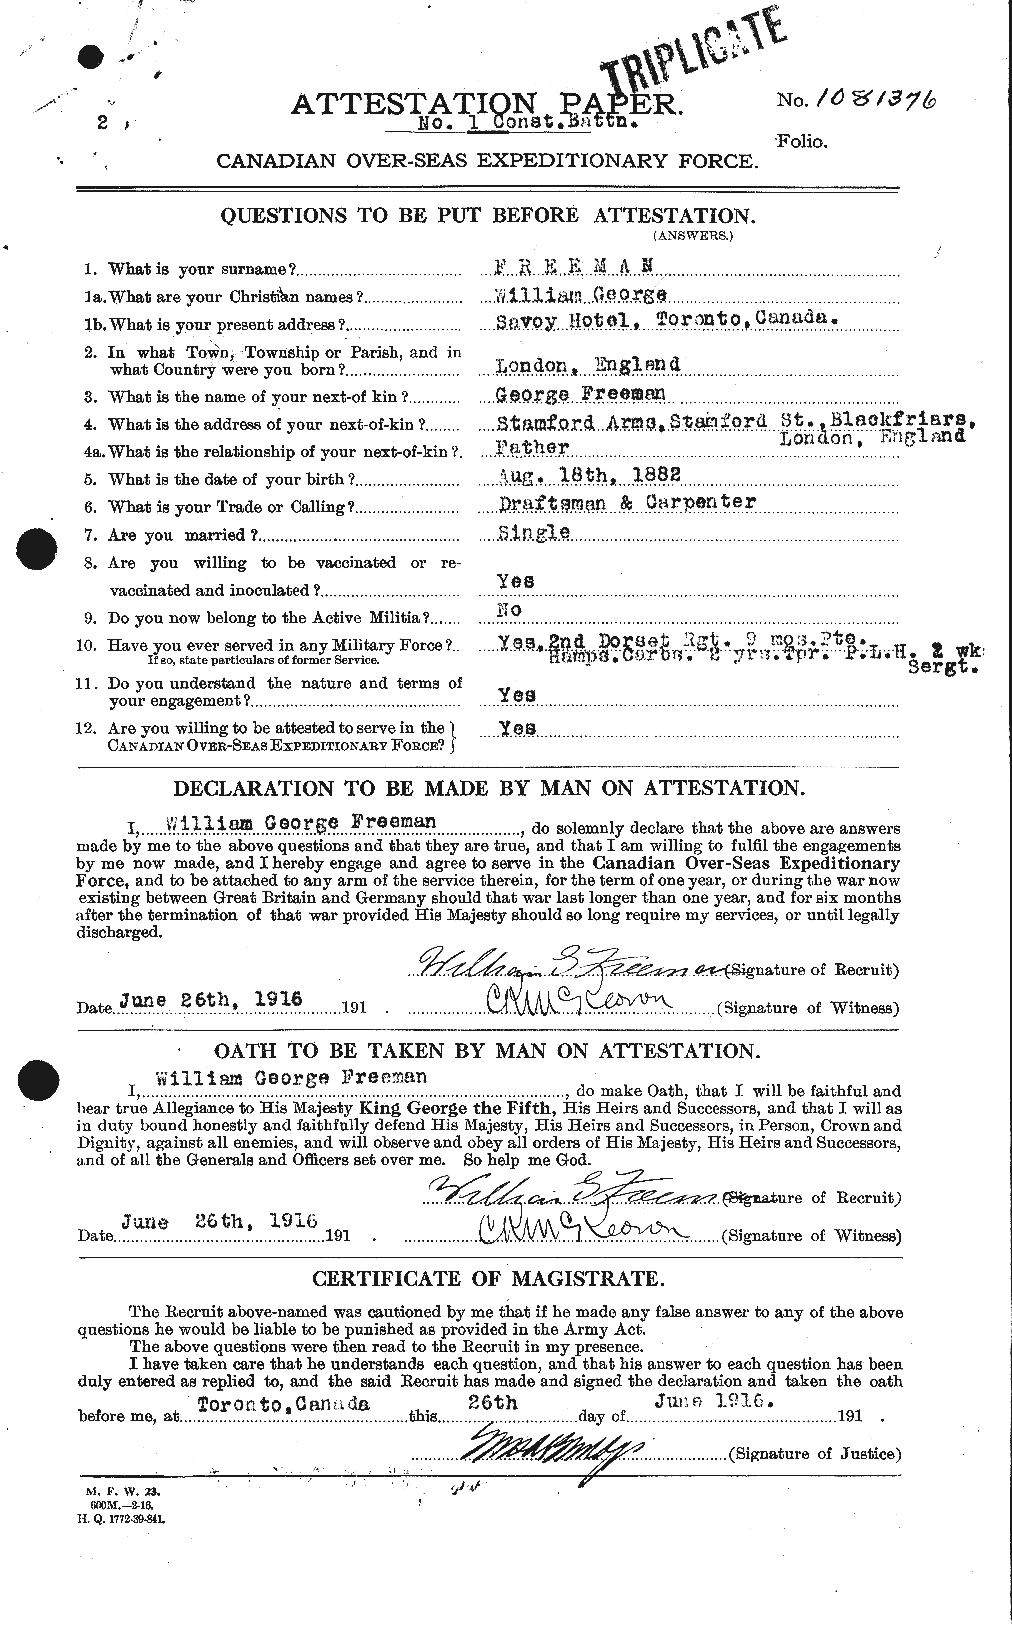 Dossiers du Personnel de la Première Guerre mondiale - CEC 336653a